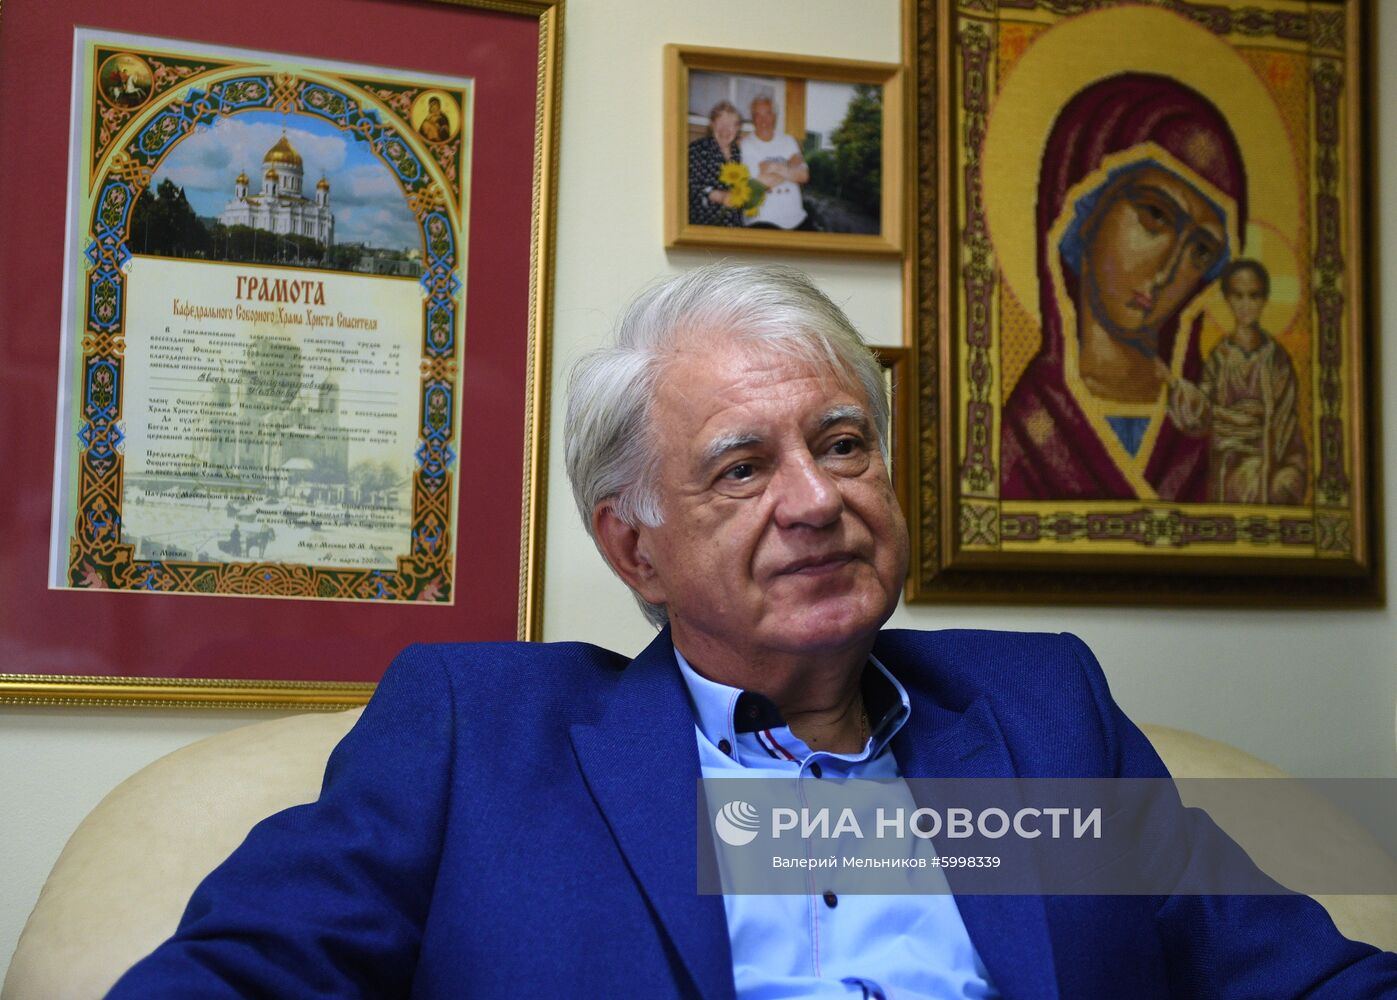 Интервью с главным дирижером театра Новая опера А. Самоилэ